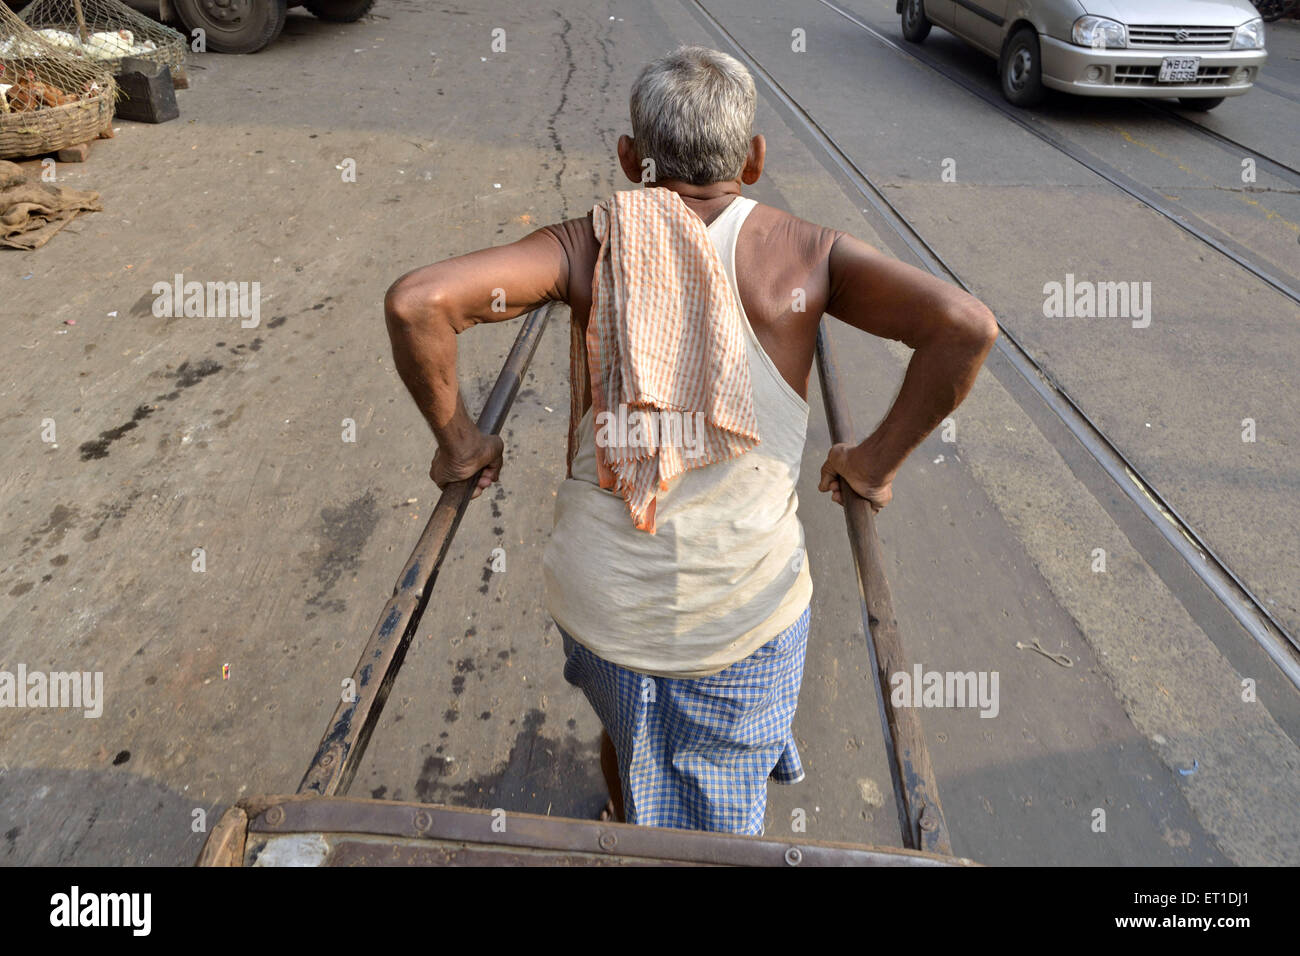 L'homme tirant part pousse-pousse sur la route de l'Ouest Bengale Asie Inde Kolkata Banque D'Images